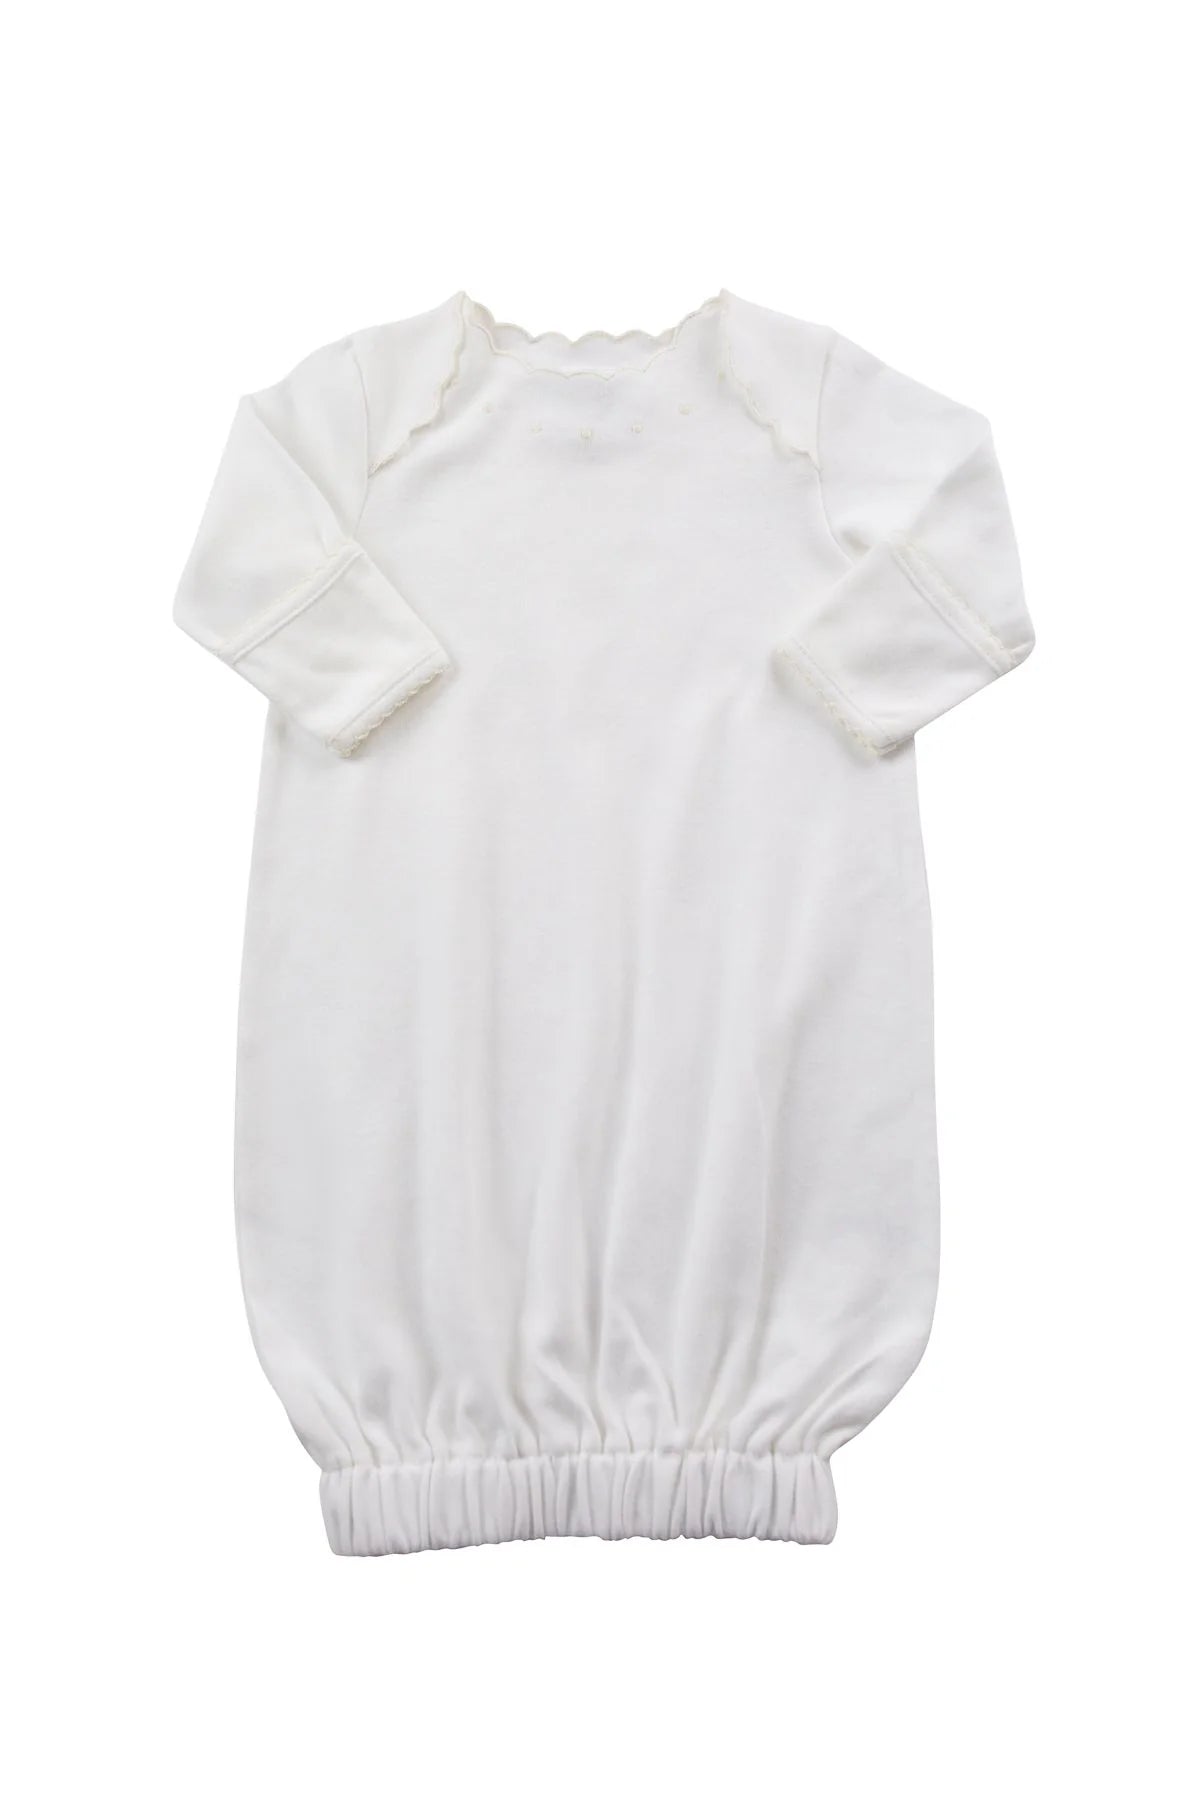 Dotson Sack Knit Gown - Ecru - Breckenridge Baby